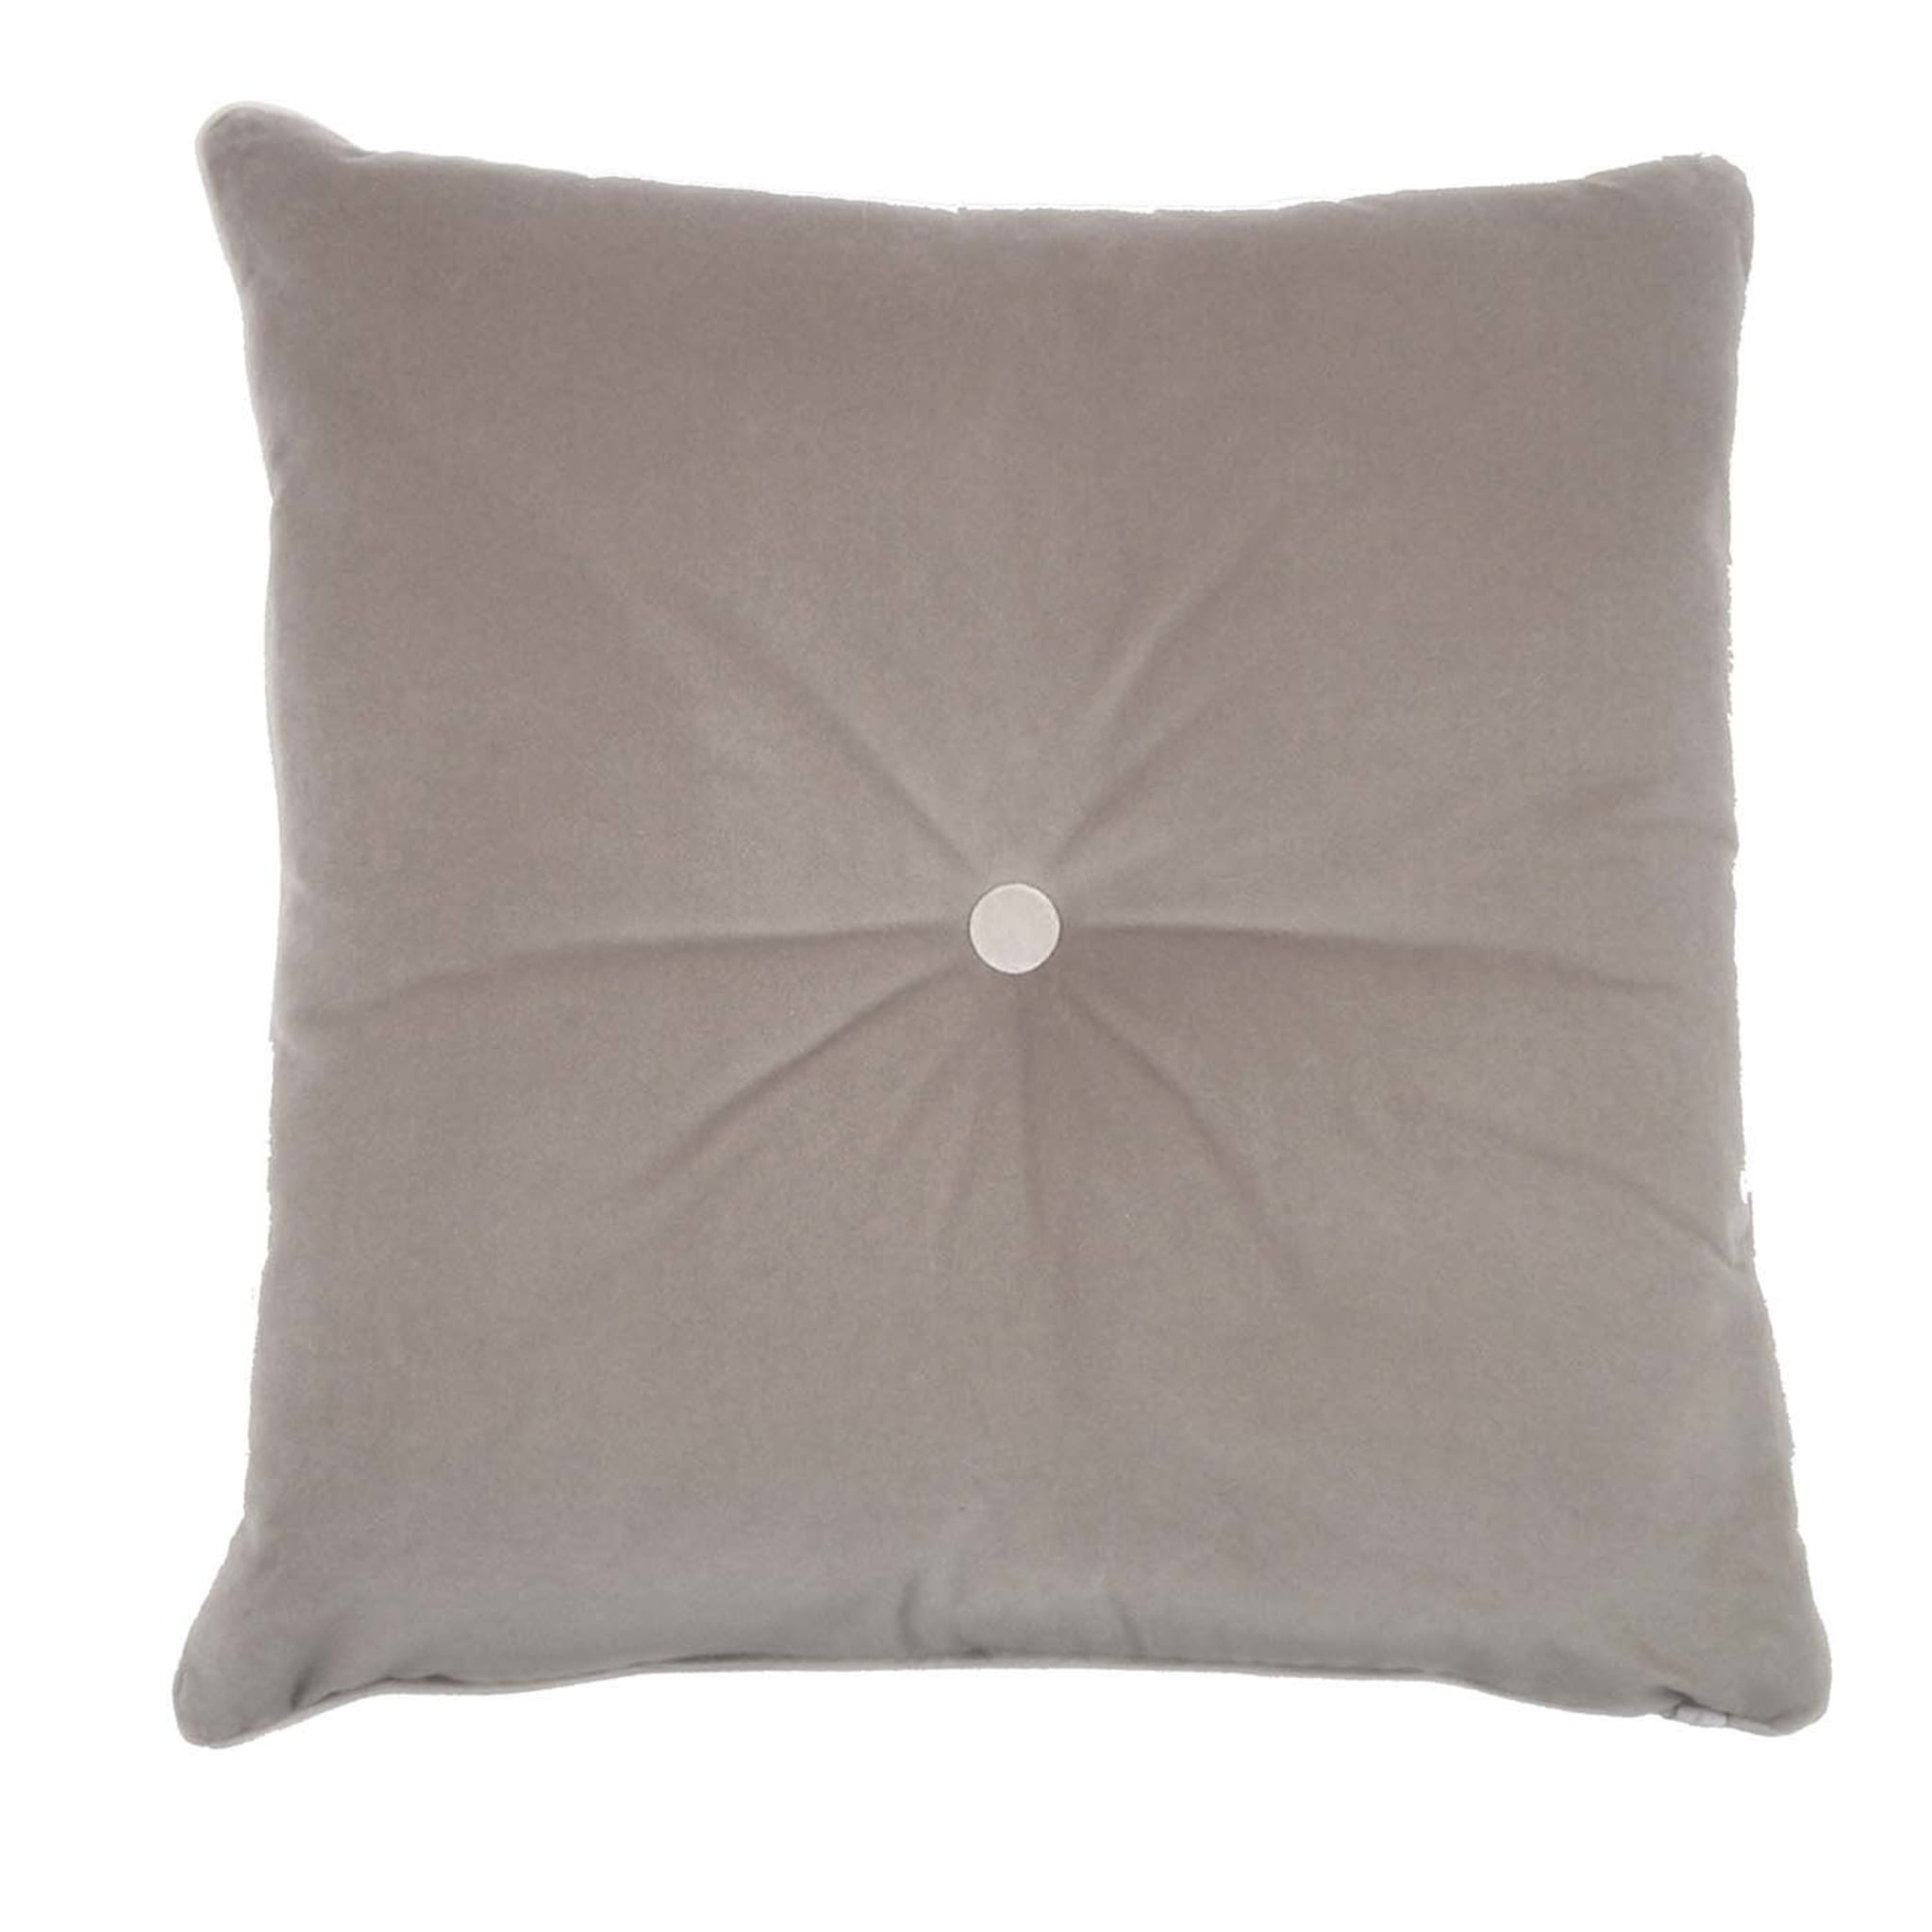 Carrè Cushion in alpine jacquard fabric - Alternative view 2